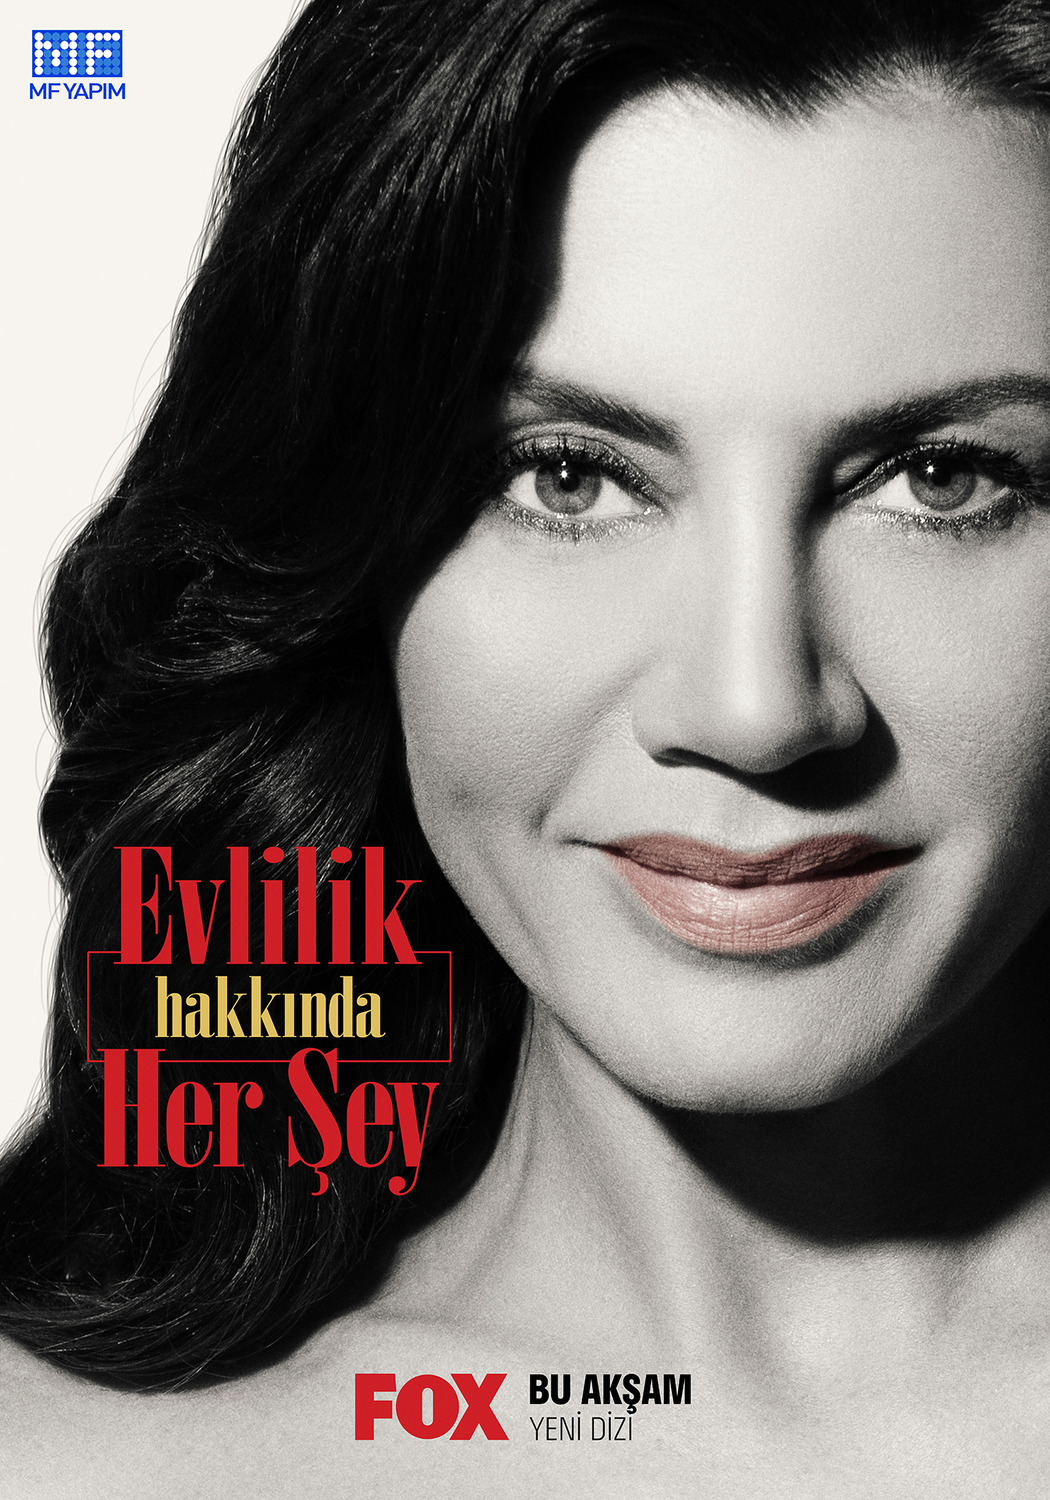 Extra Large TV Poster Image for Evlilik Hakkinda Her Sey (#2 of 2)